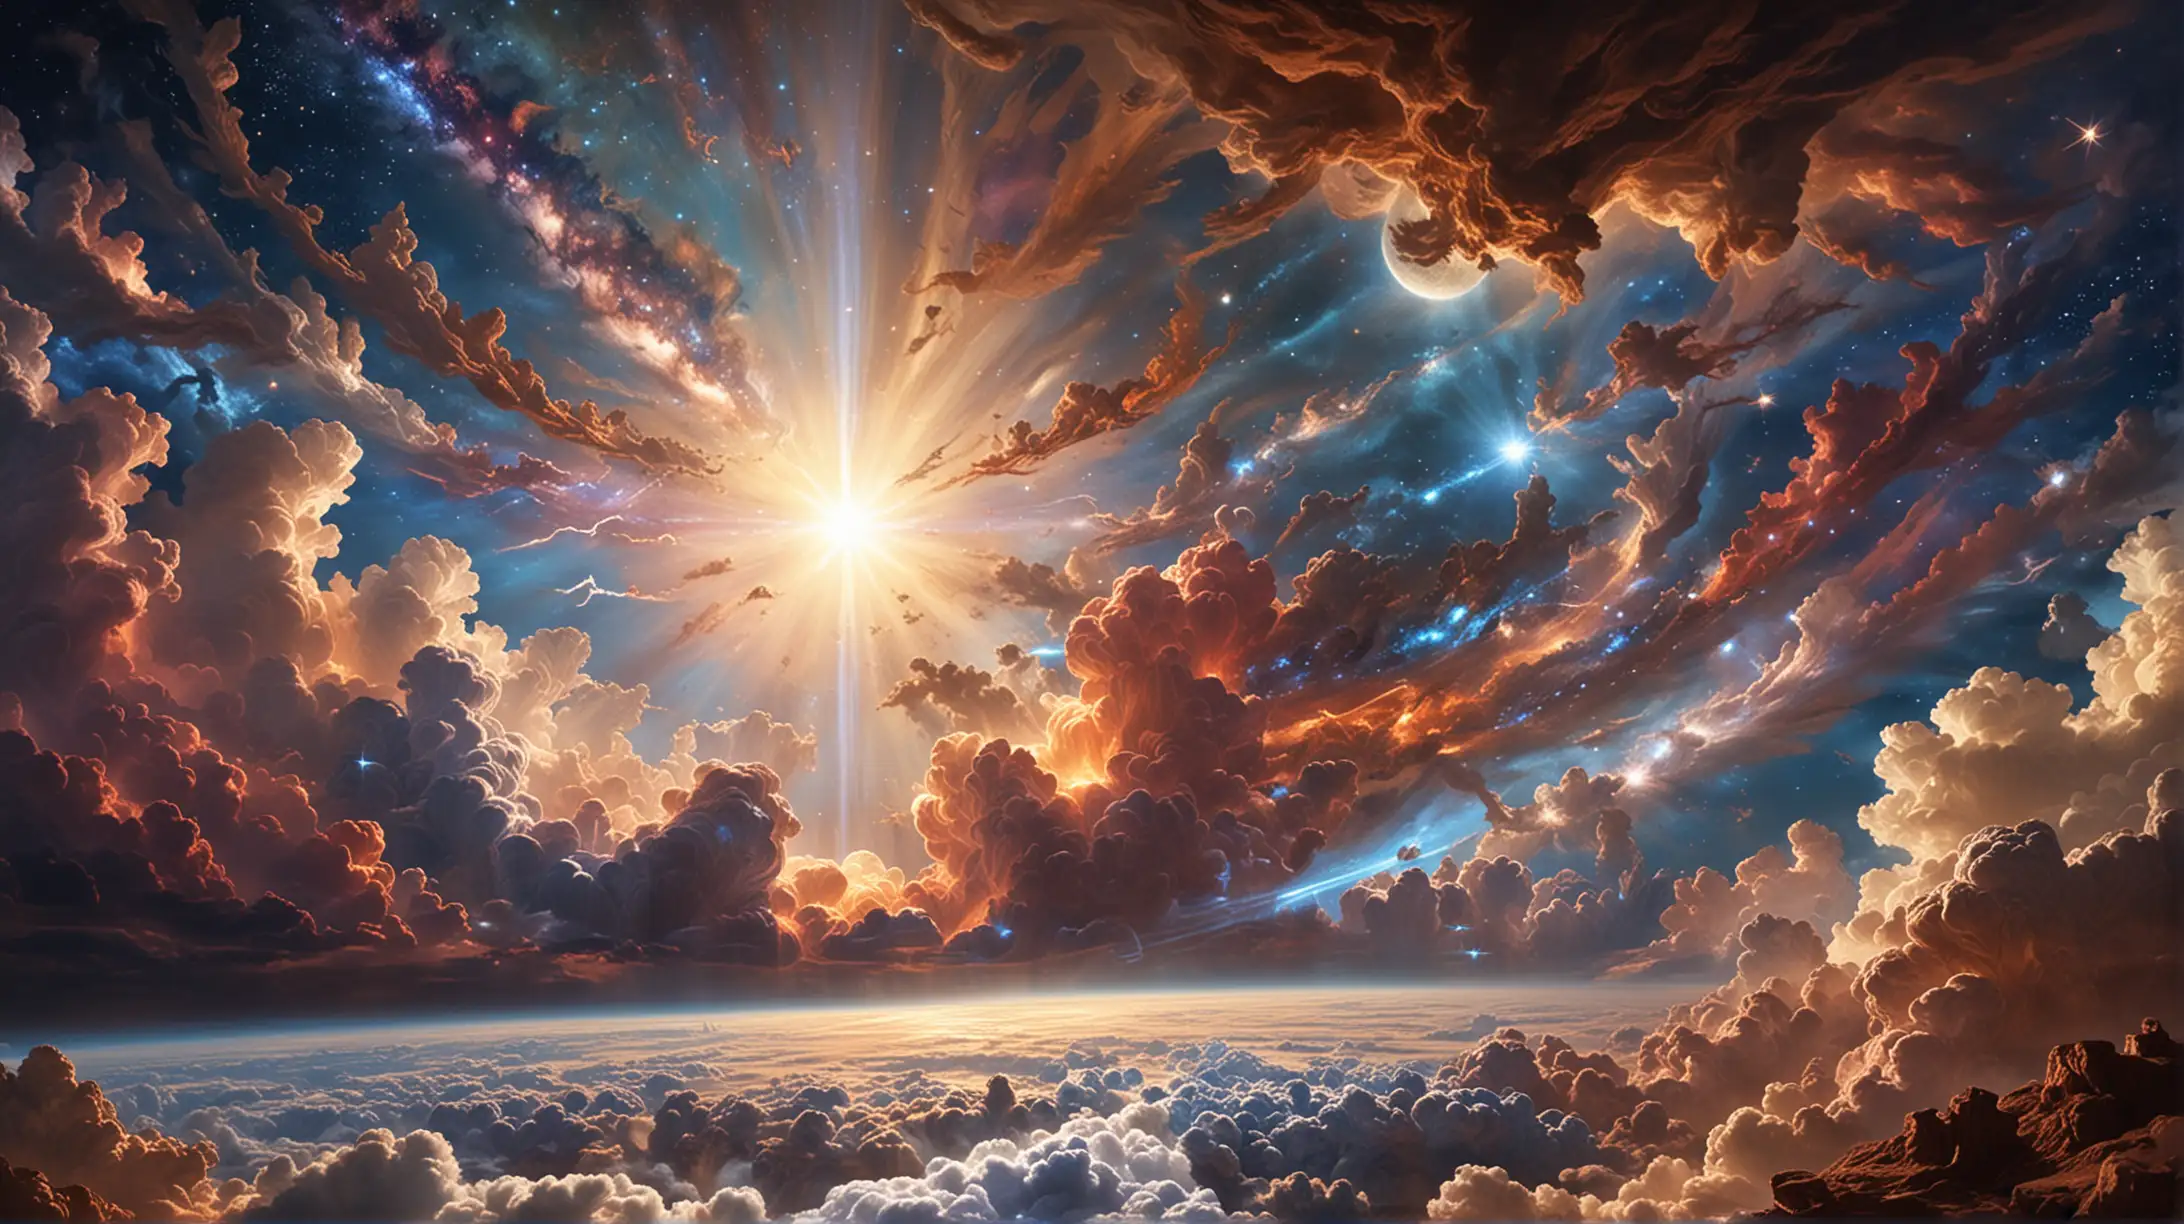 En el principio, Dios creó los cielos y la tierra